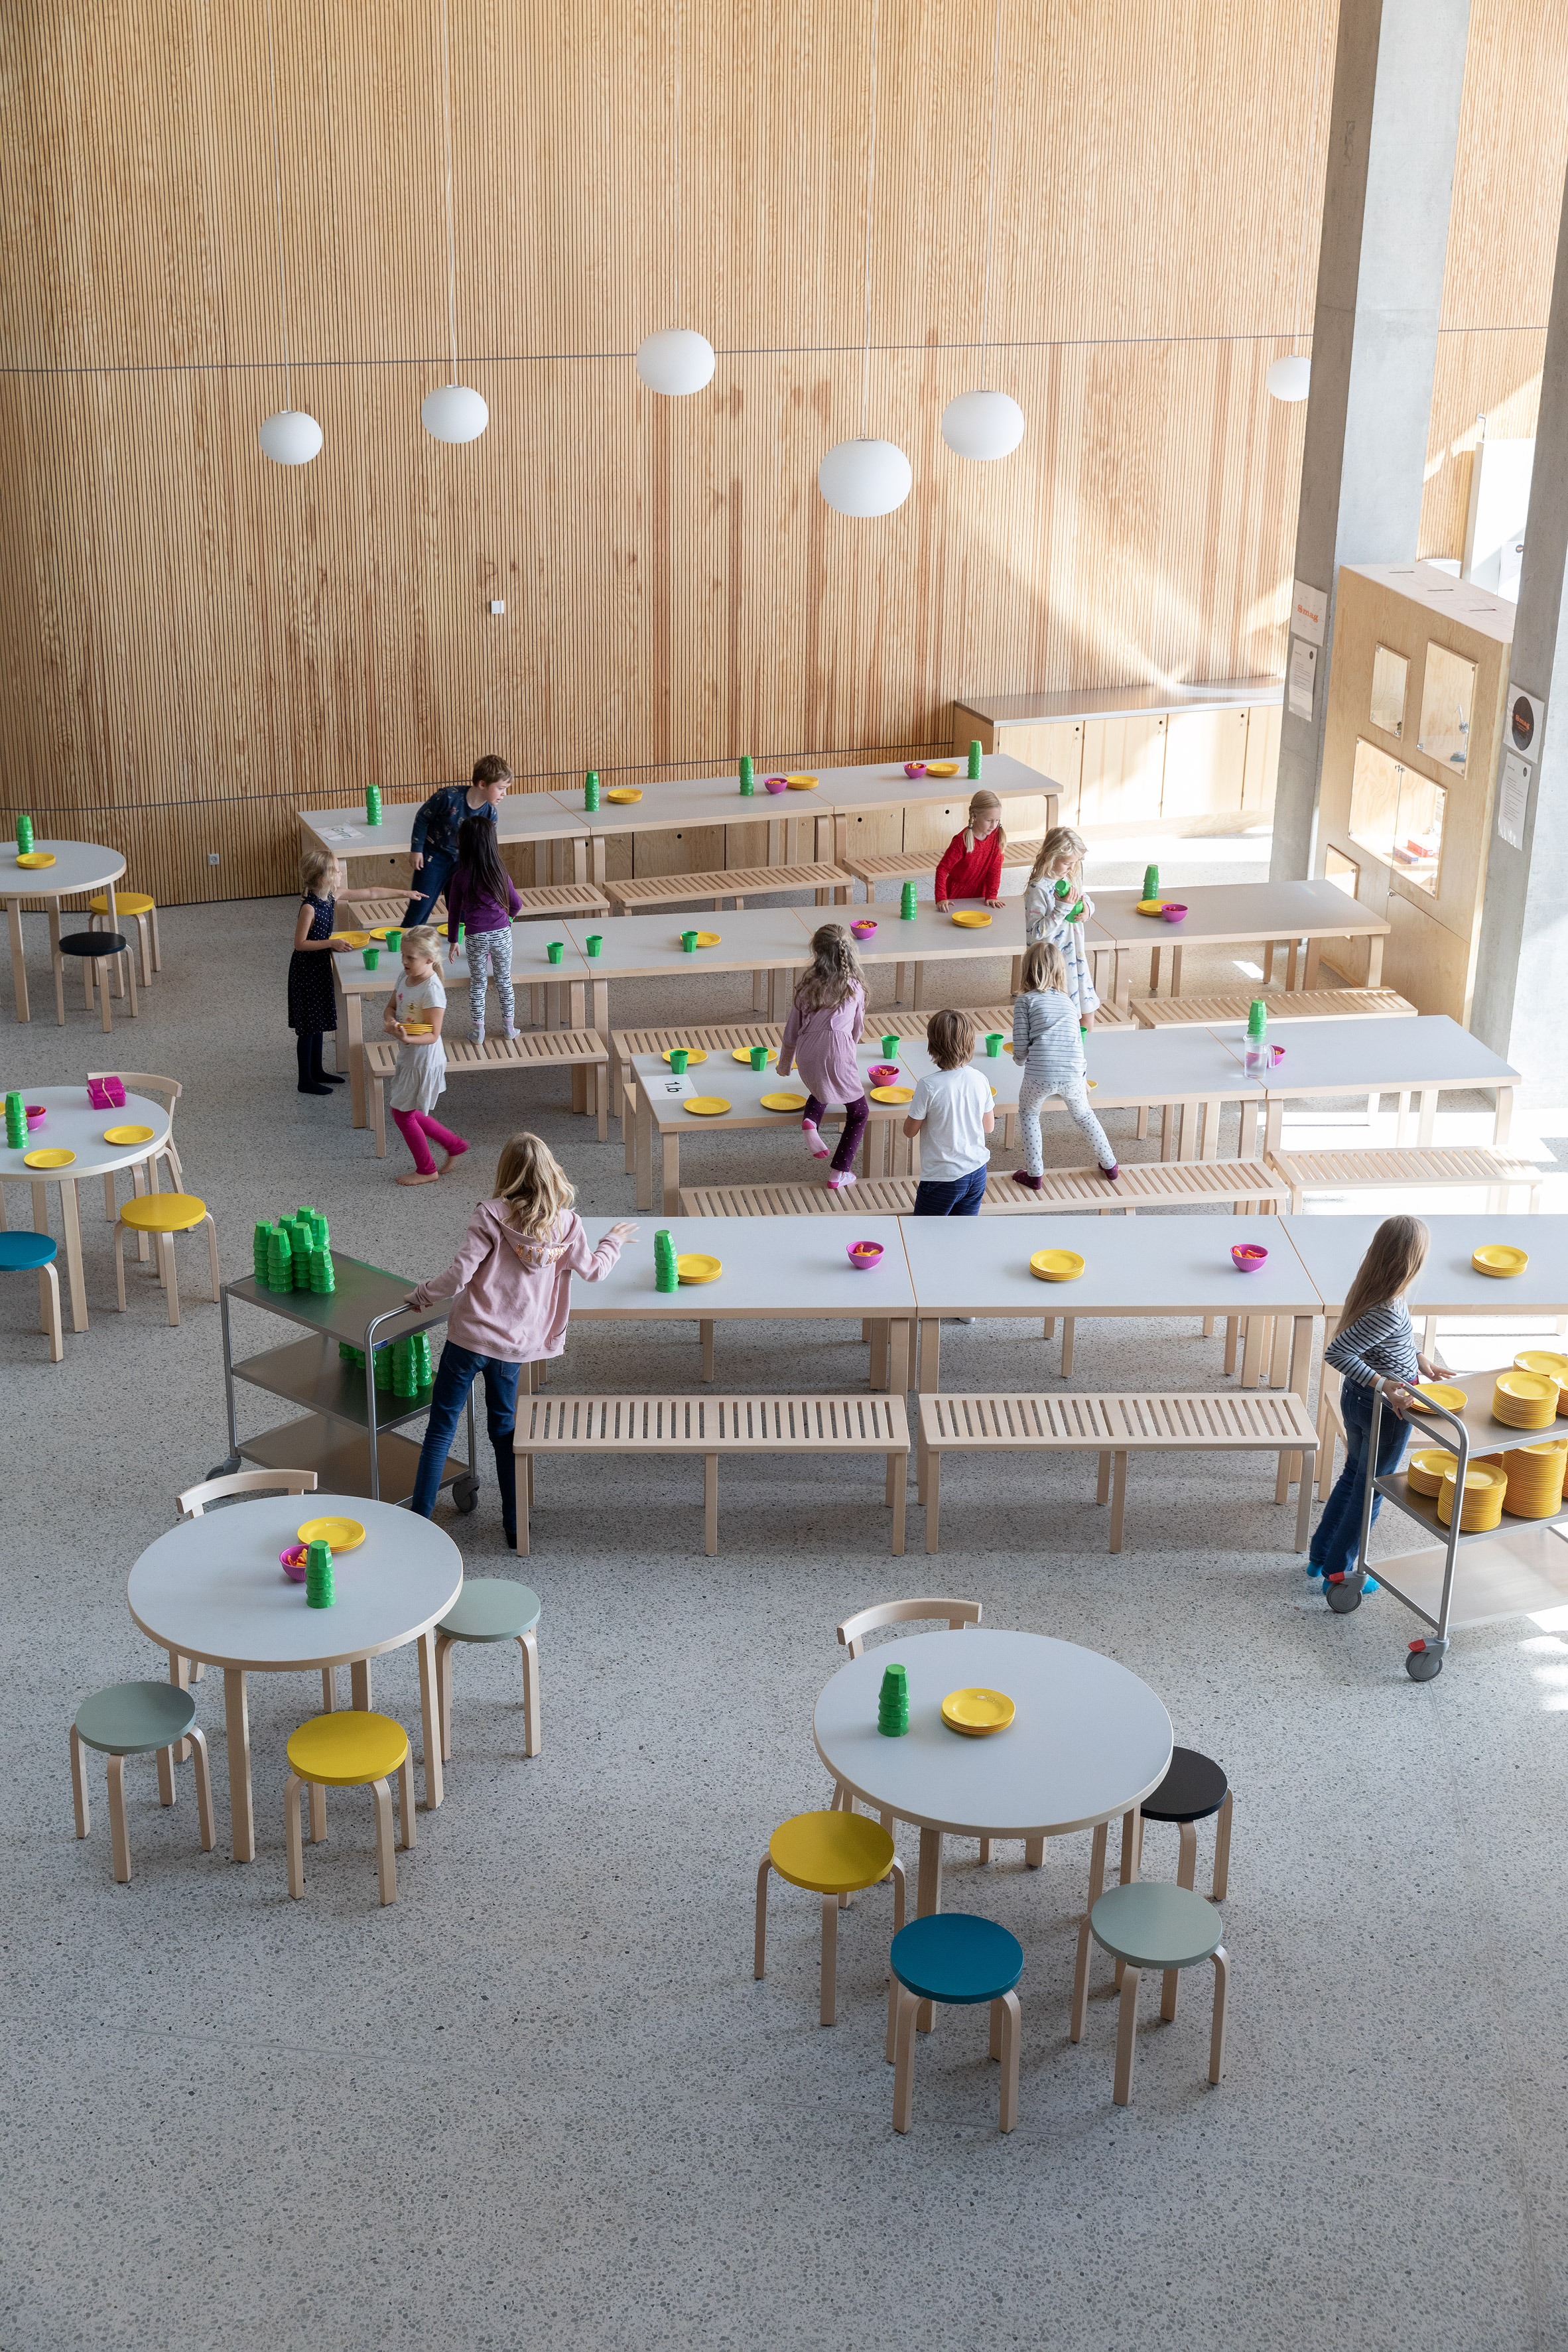 Kalvebod Fælled School by Lundgaard & Tranberg Architects